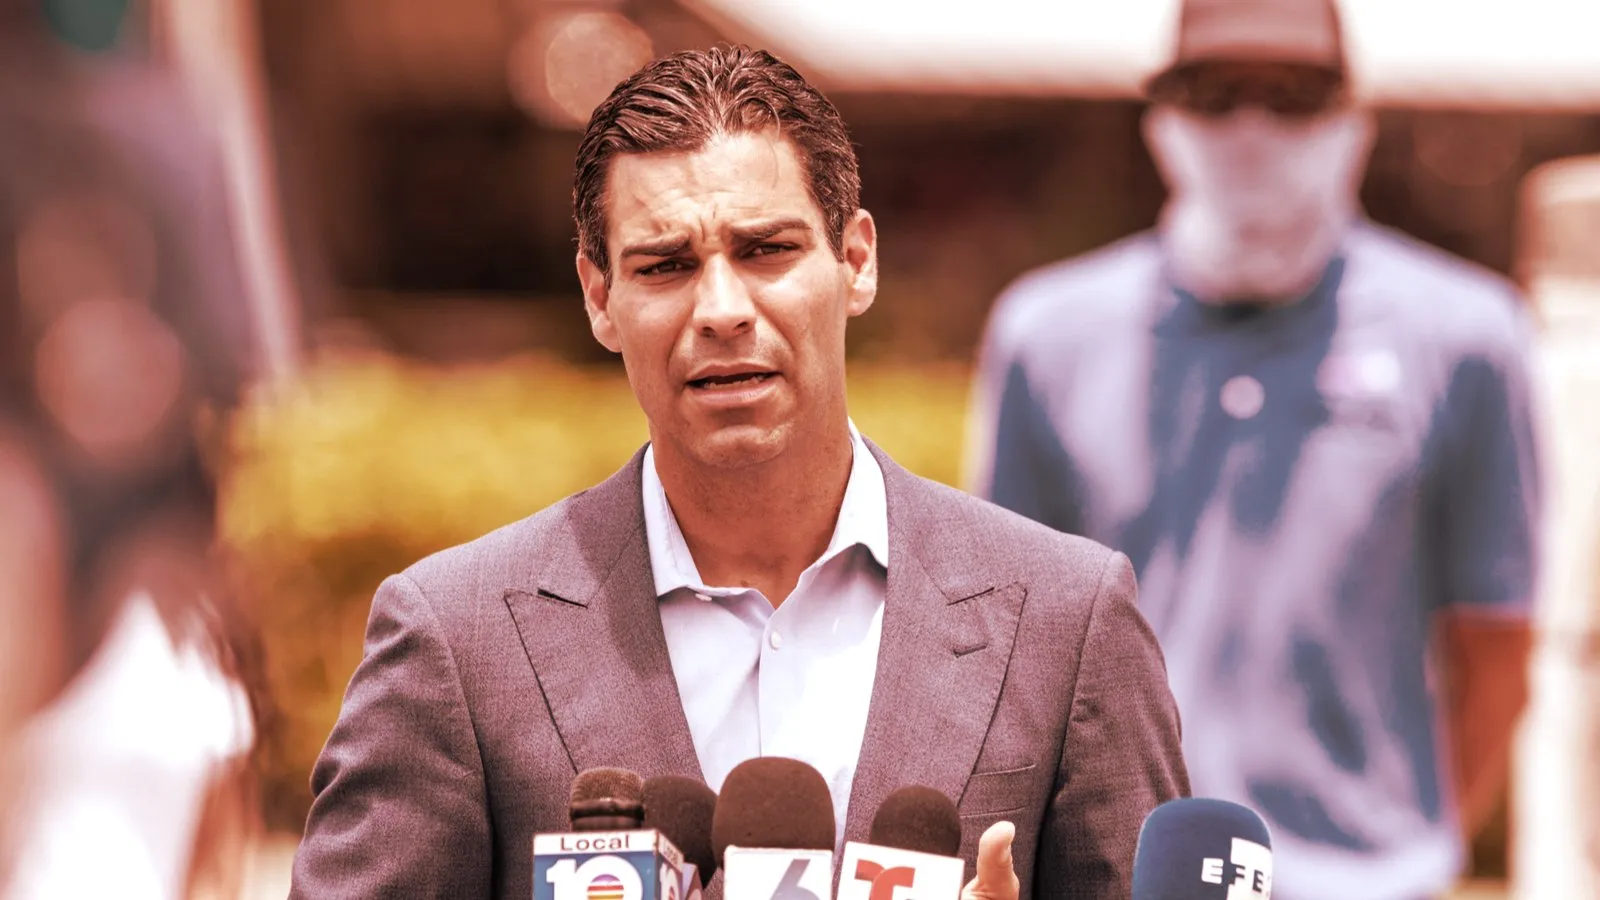 Alcalde de Miami, Francis Suárez, en 2020. Imagen: Shutterstock